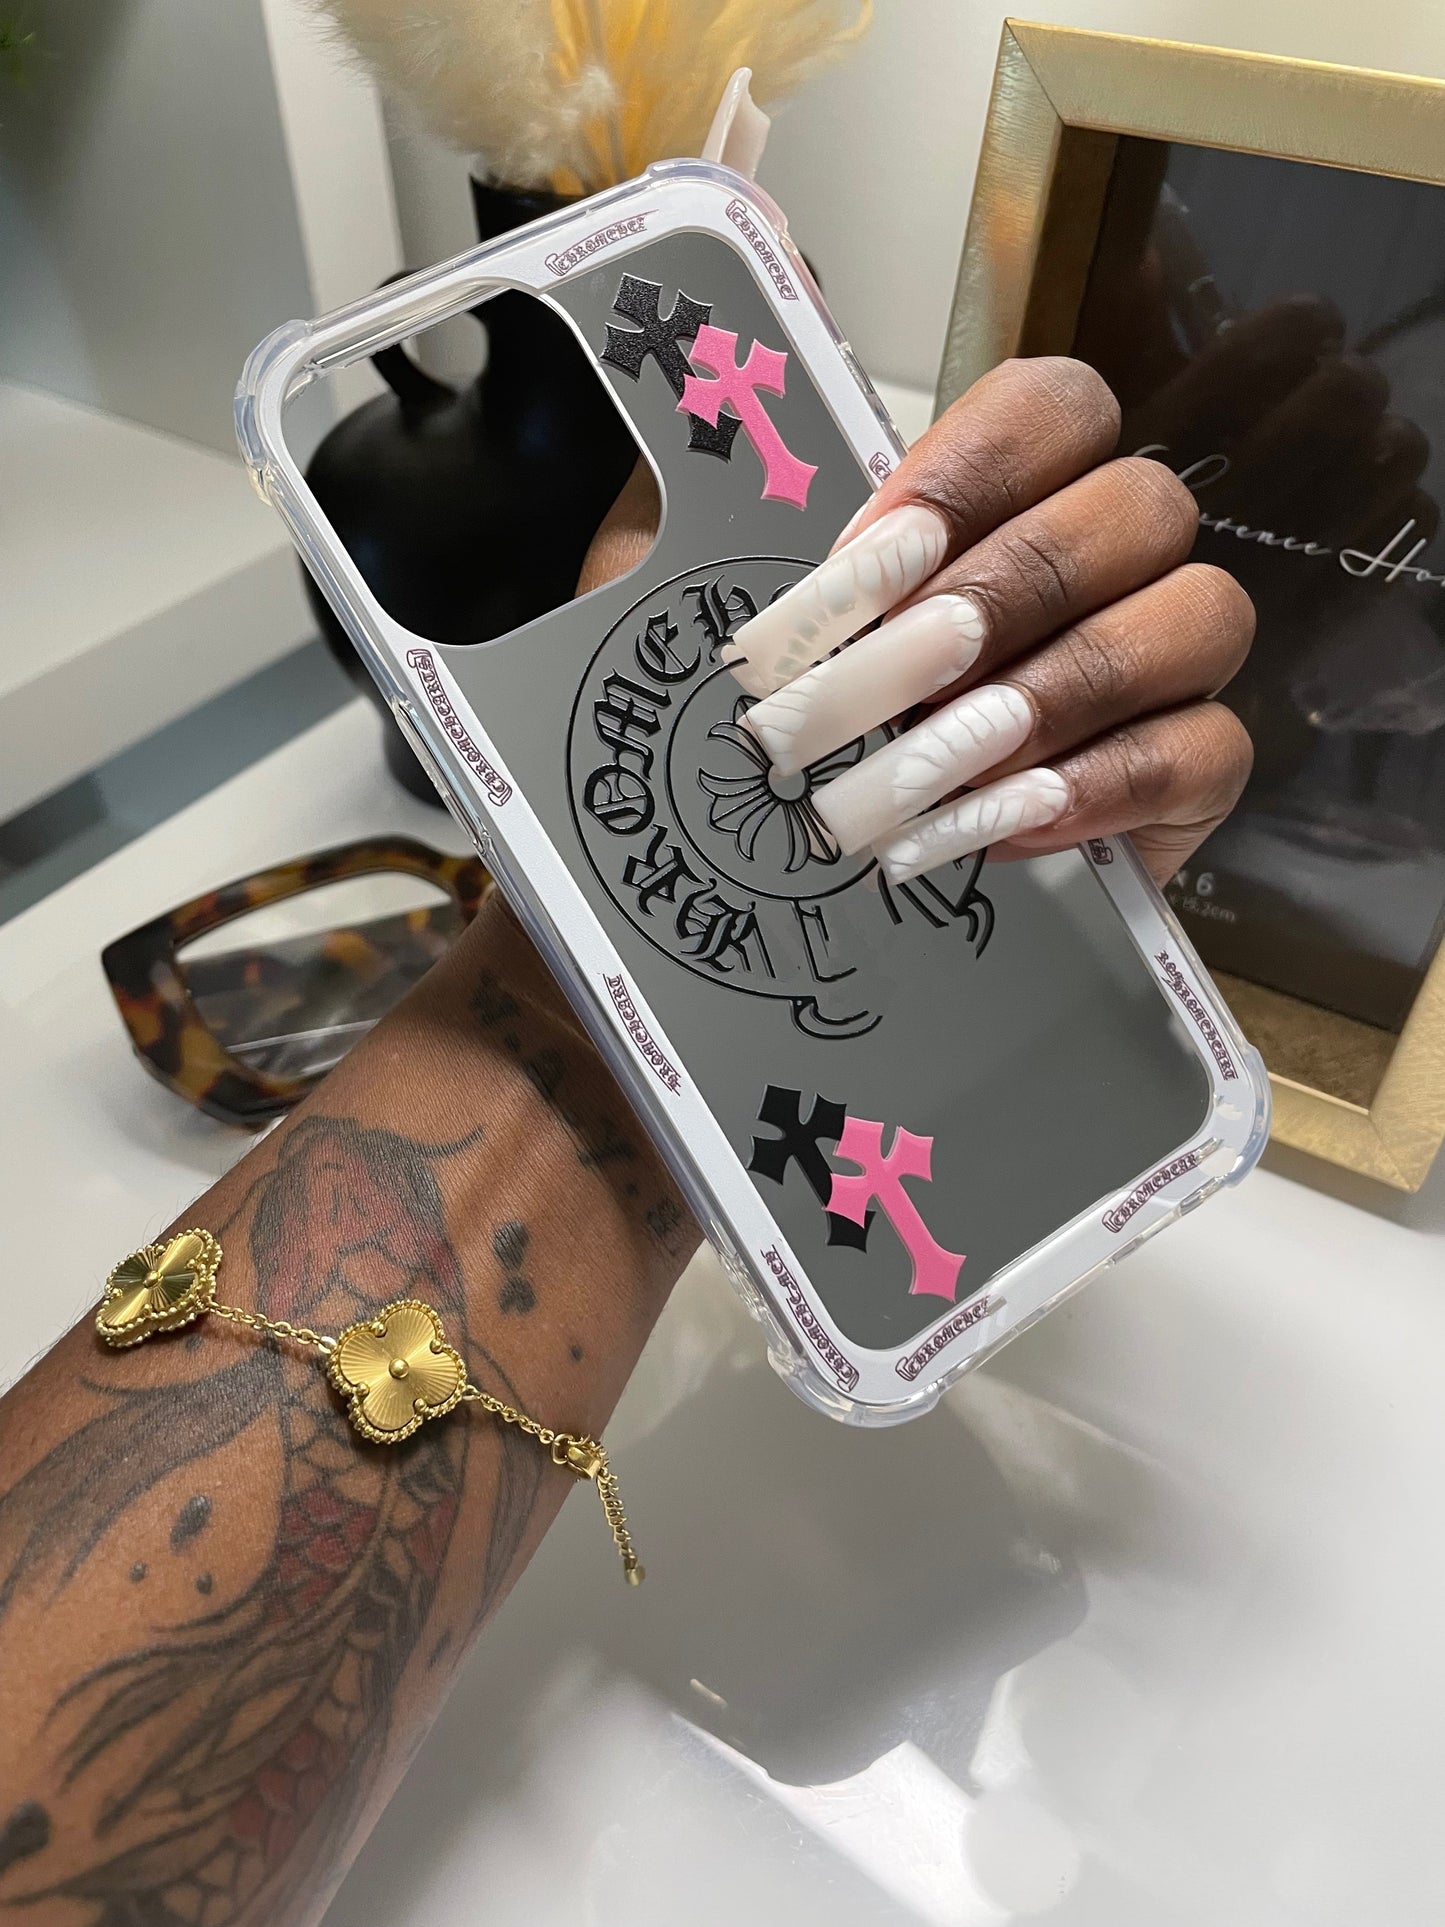 Louis Vuitton Heart iPhone XR Case